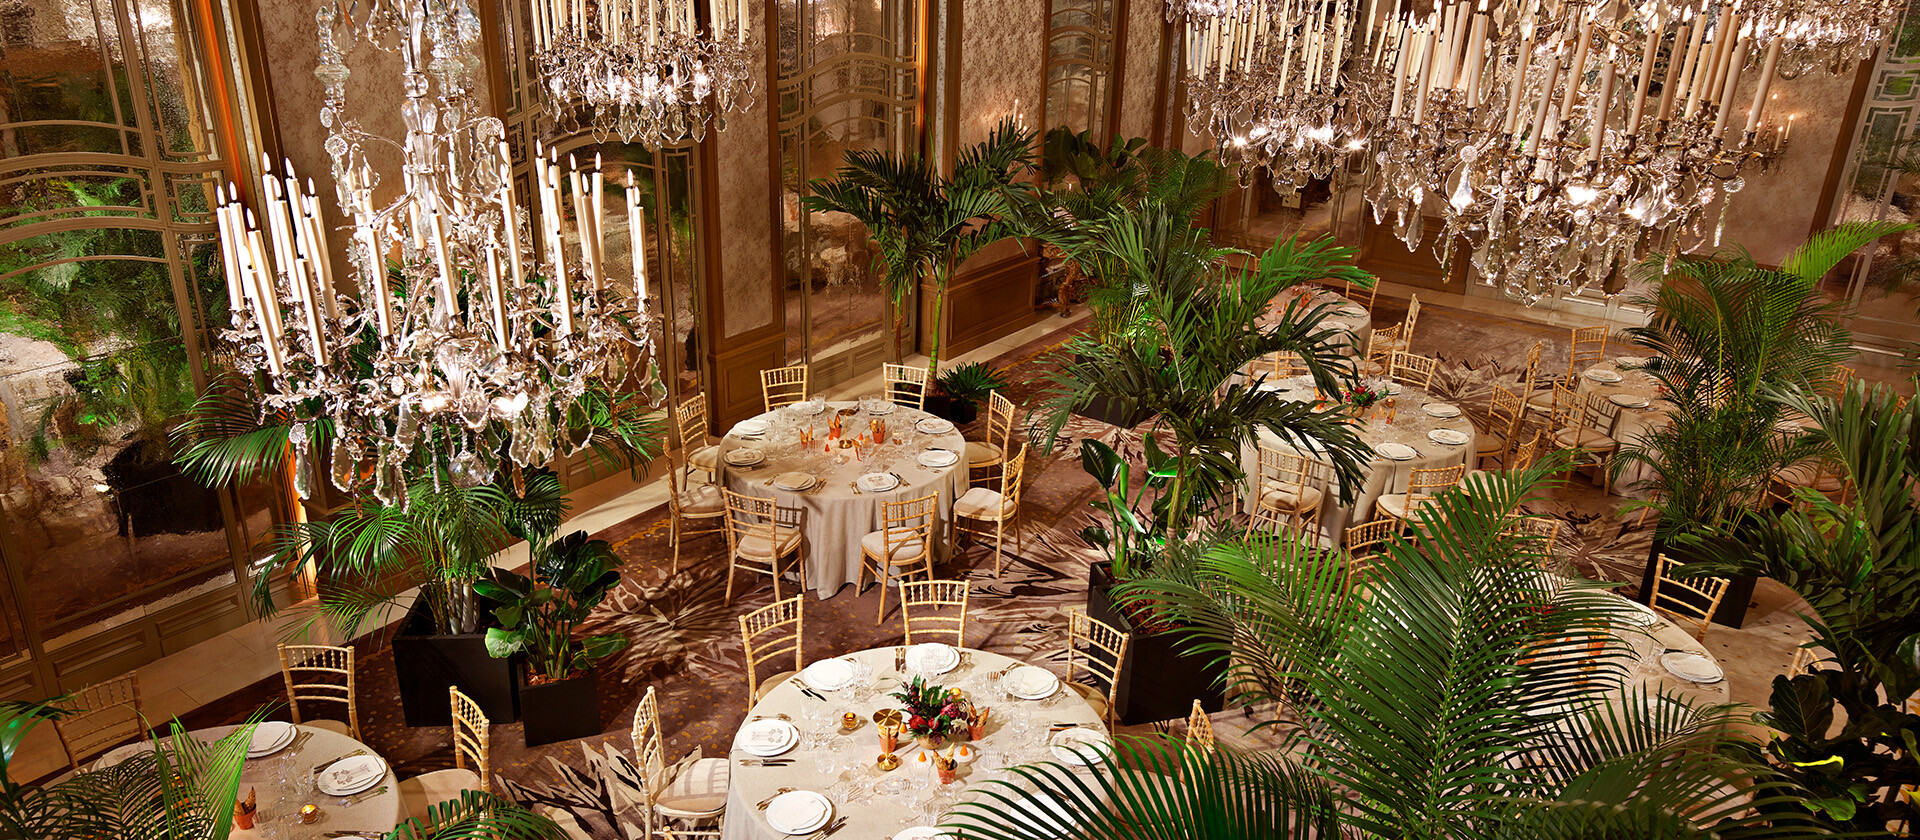 晚餐是在Le Salon高级定制餐厅(Hôtel Plaza Athénée, Paris - Dorchester Collection)拍摄的圆桌和棕榈树。bob手机网页版官网